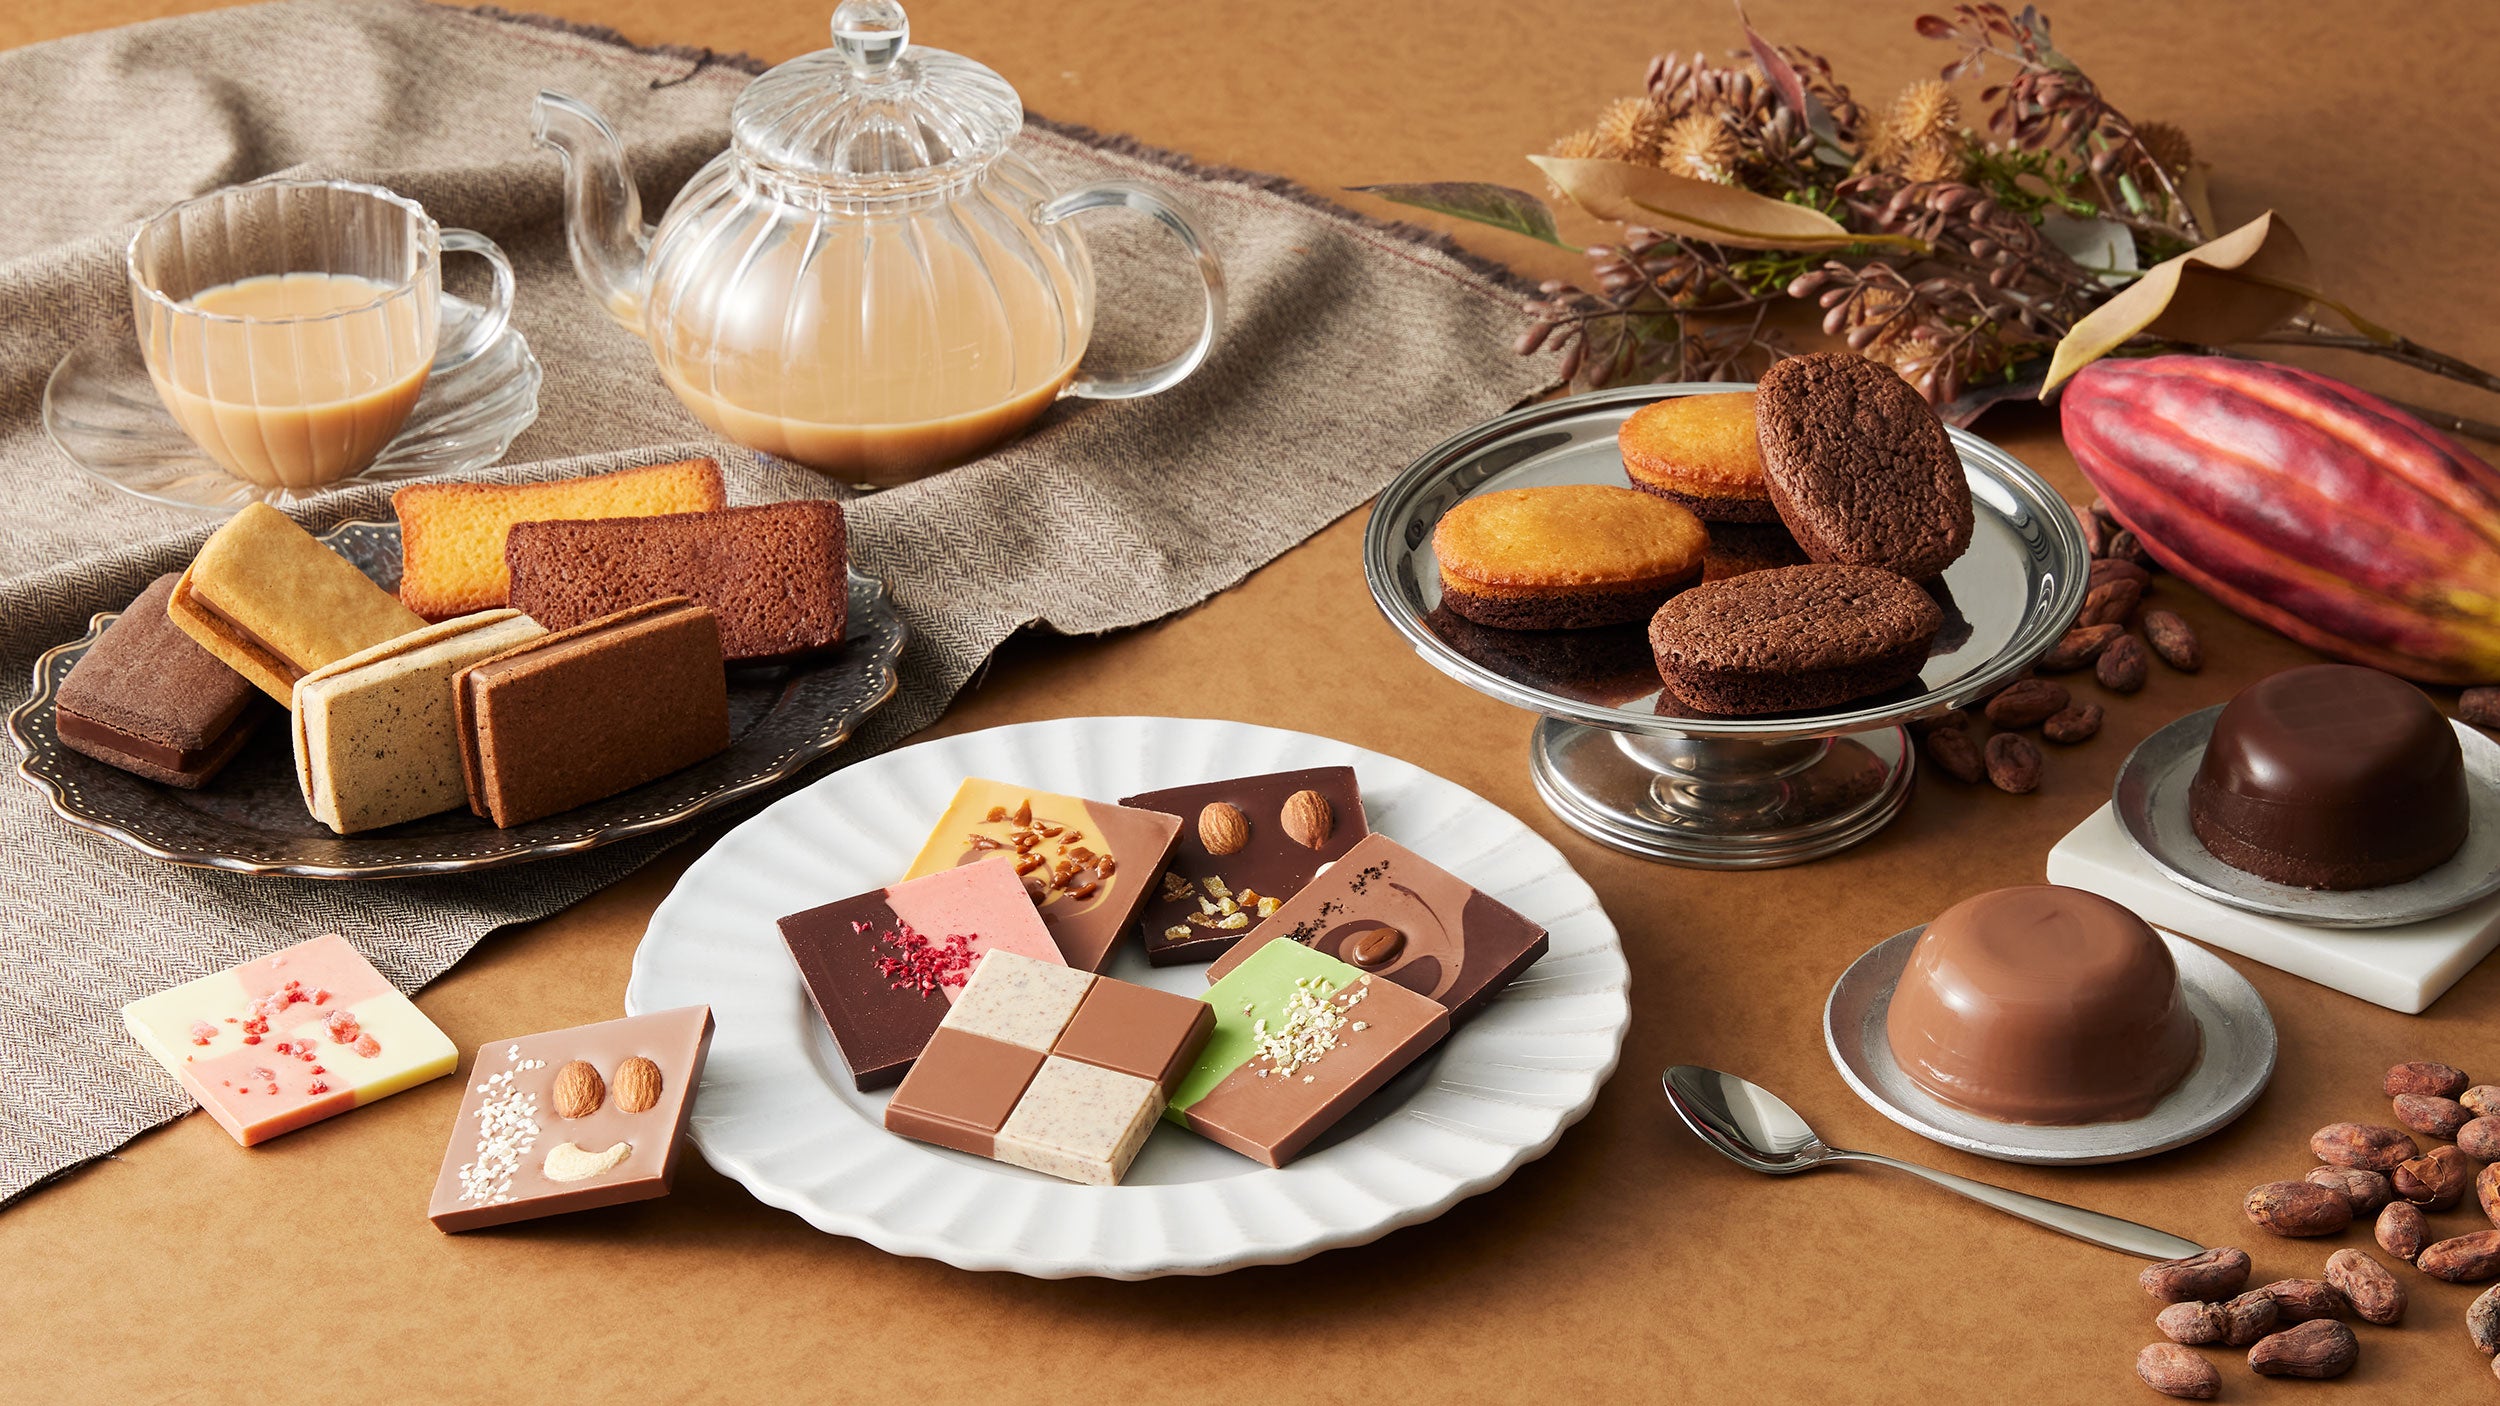 ベルギー産クーベルチュールを使用したショコラの味わいを楽しむ秋冬